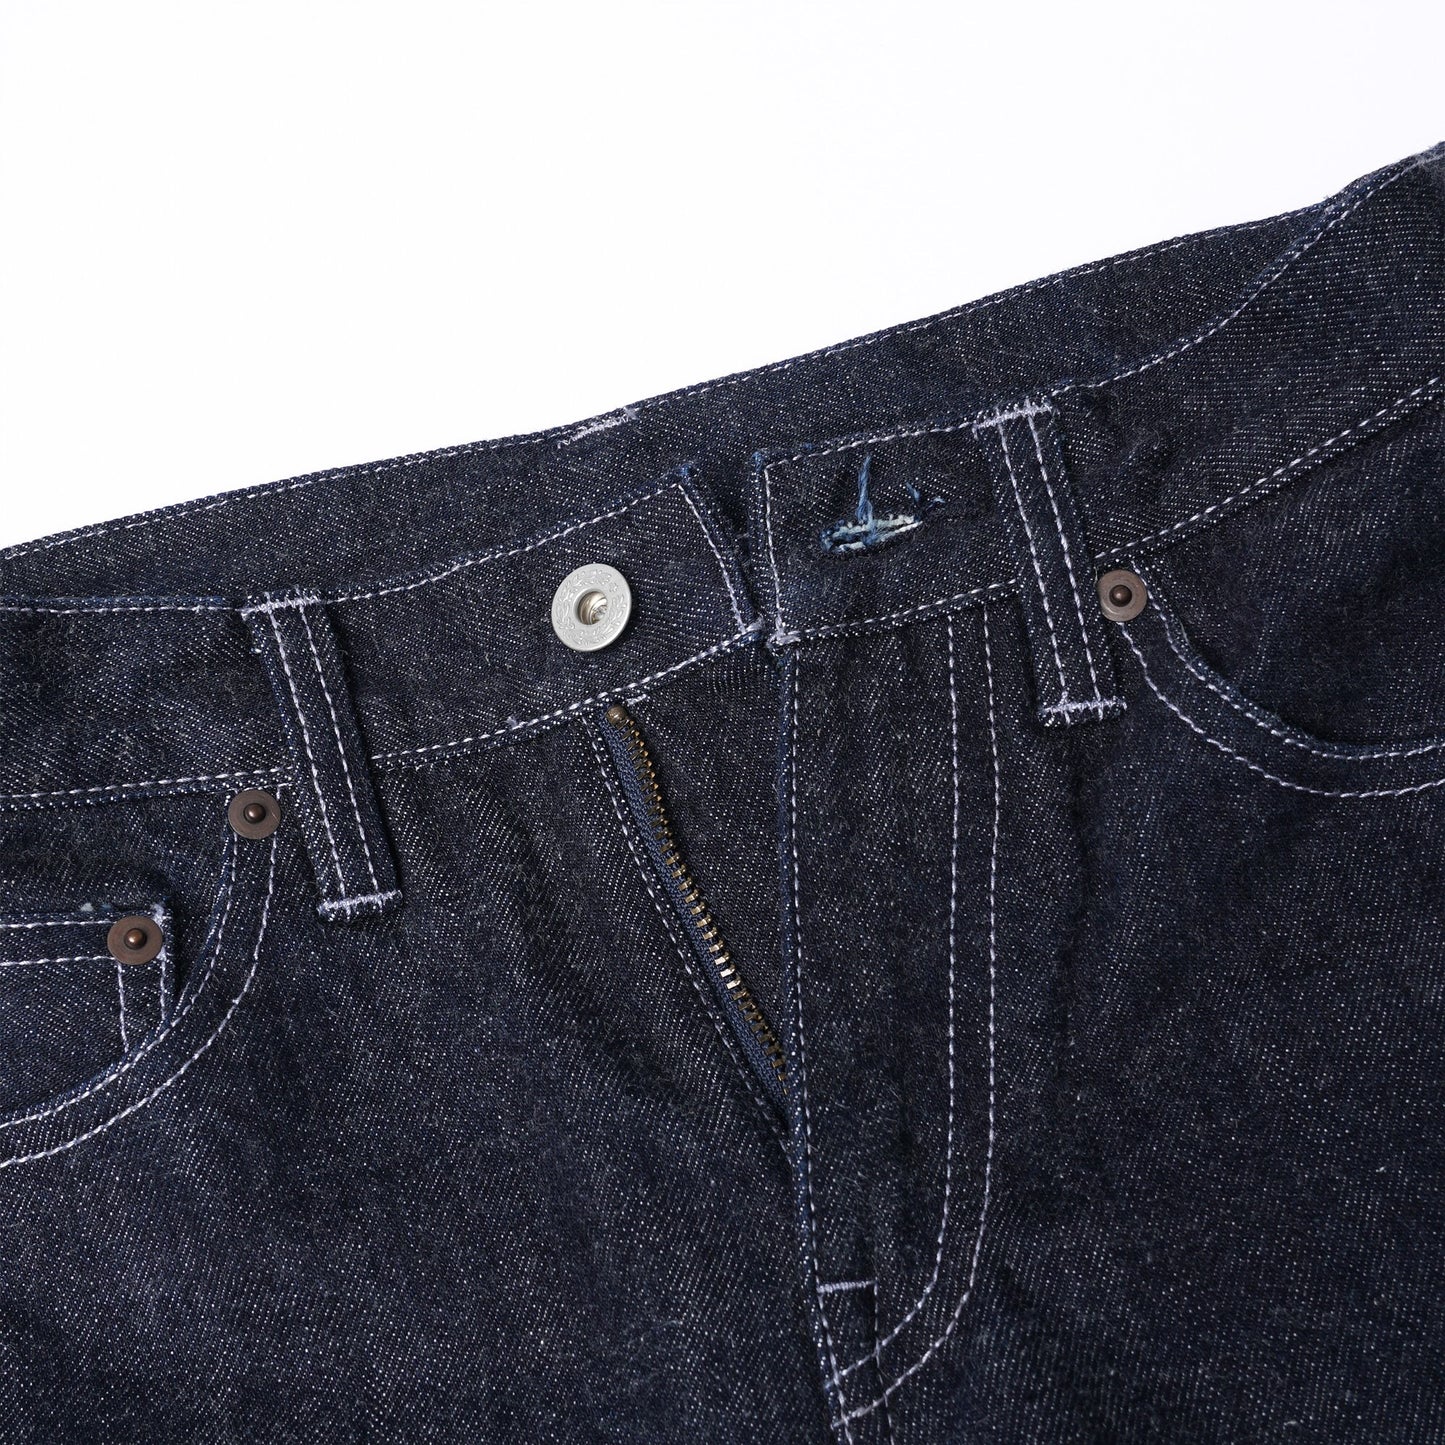 【訂製】No.21 Blue Black Dyed Unwashed Slim Fit Jeans